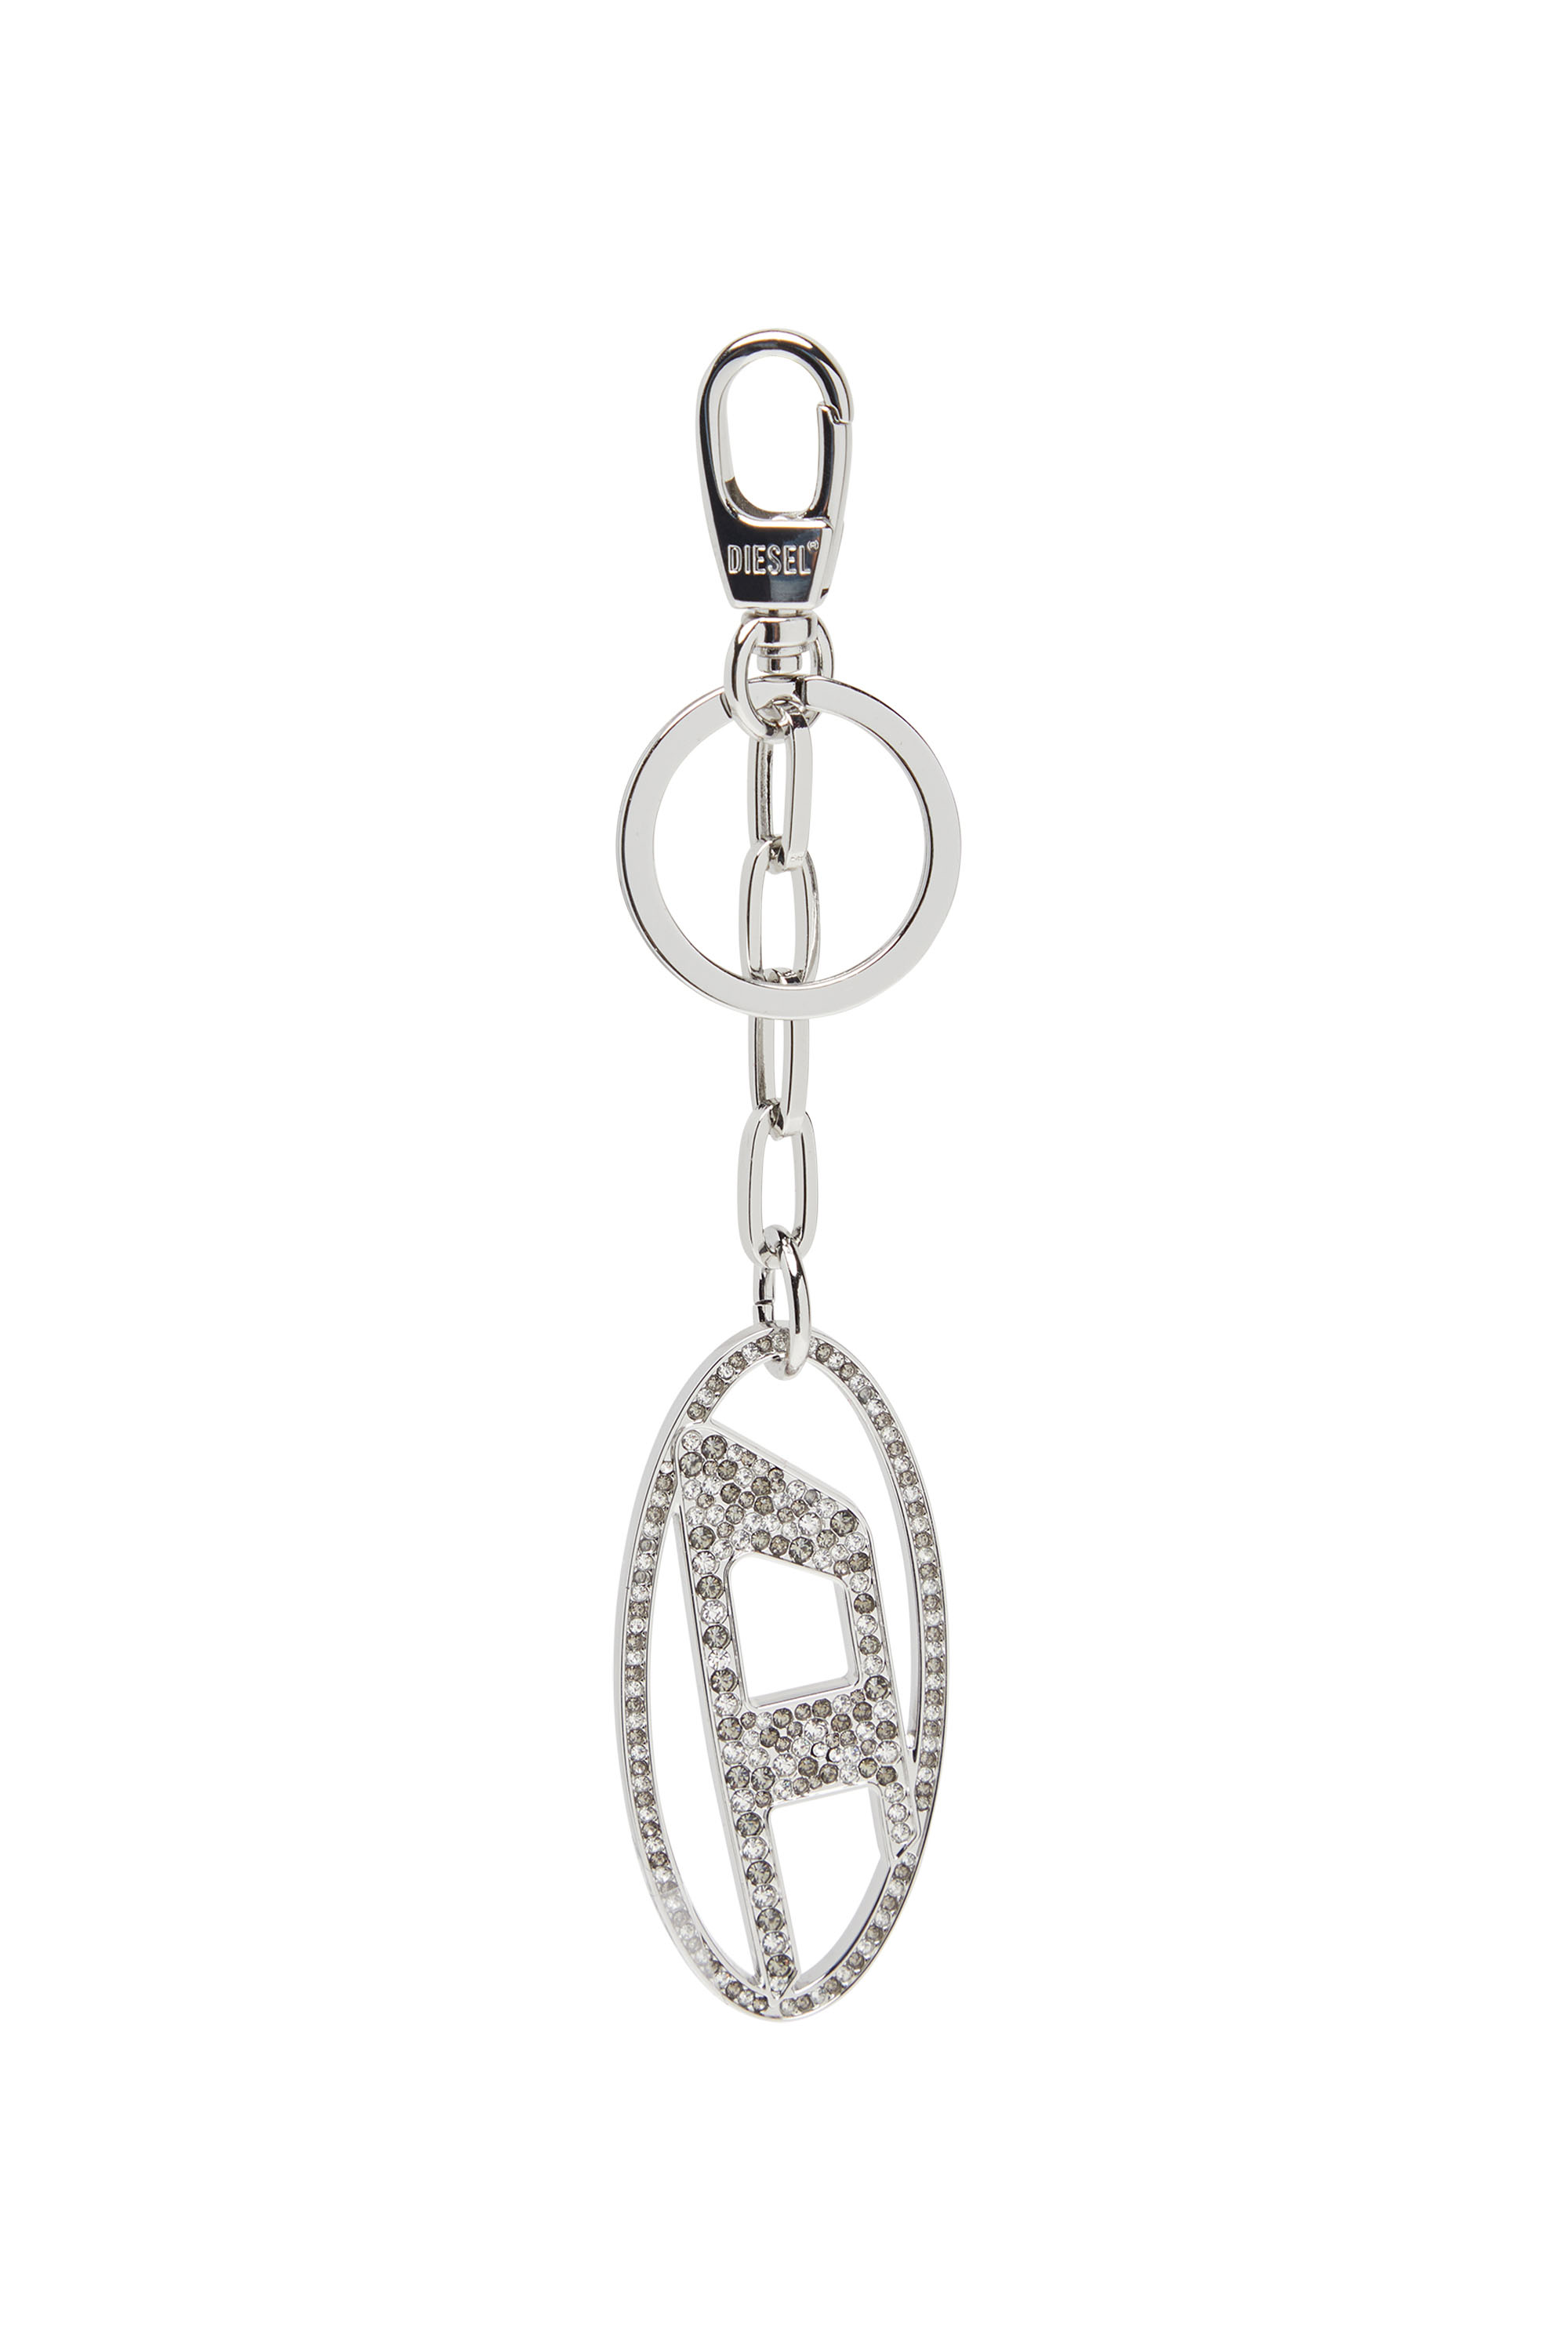 Diesel - Porte-clés Oval D en métal avec cristaux - Bijoux et Gadgets - Femme - Gris argenté